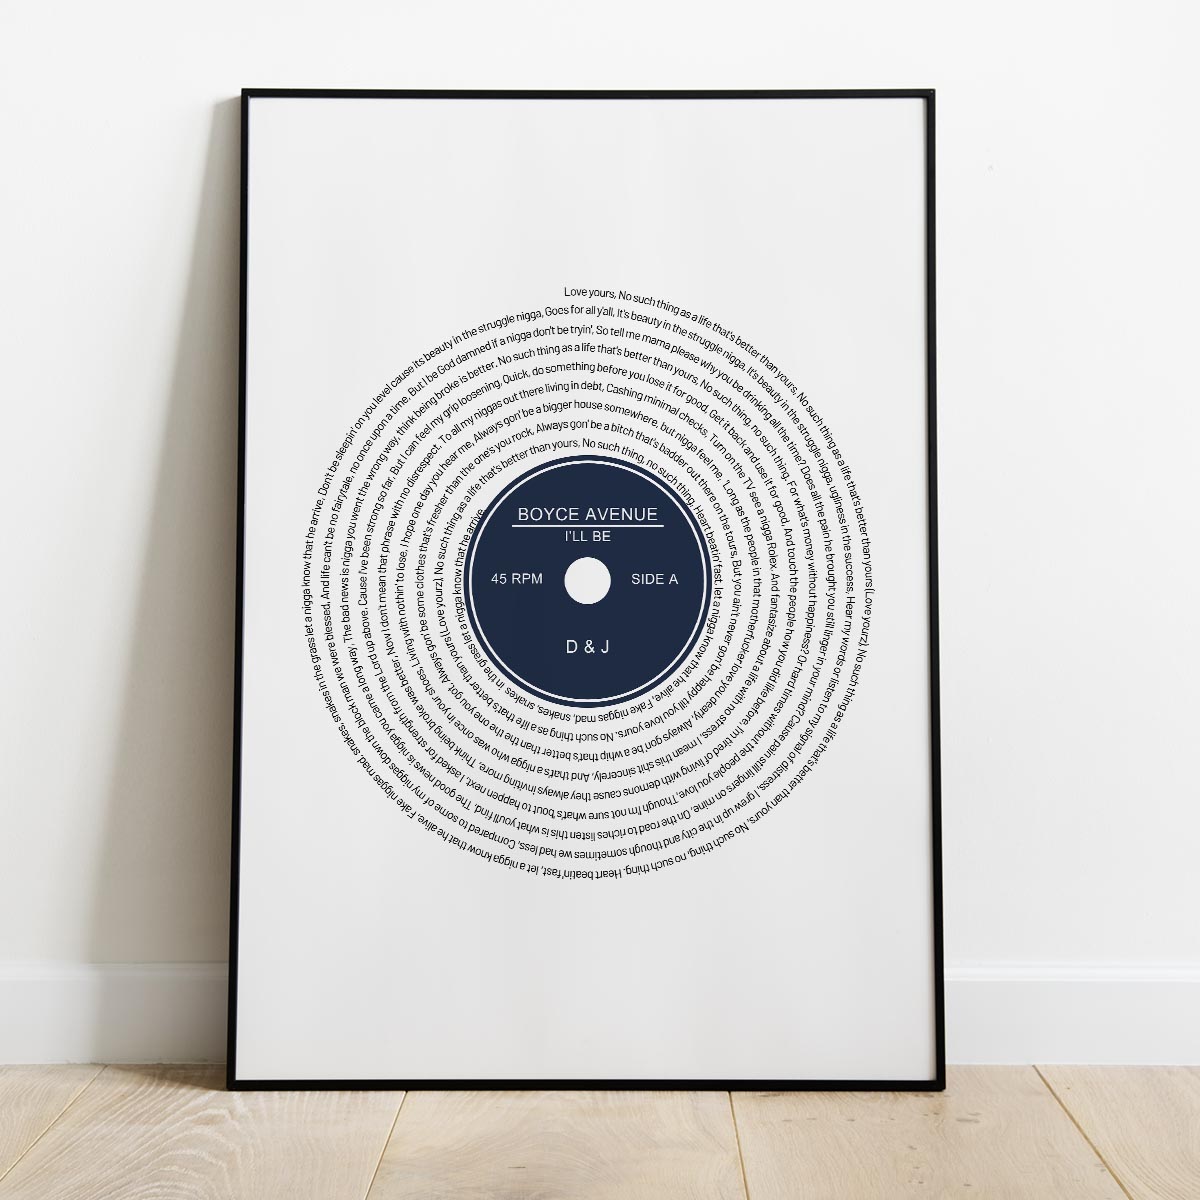 Póster for Sale con la obra «Record Lover - Música de vinilo